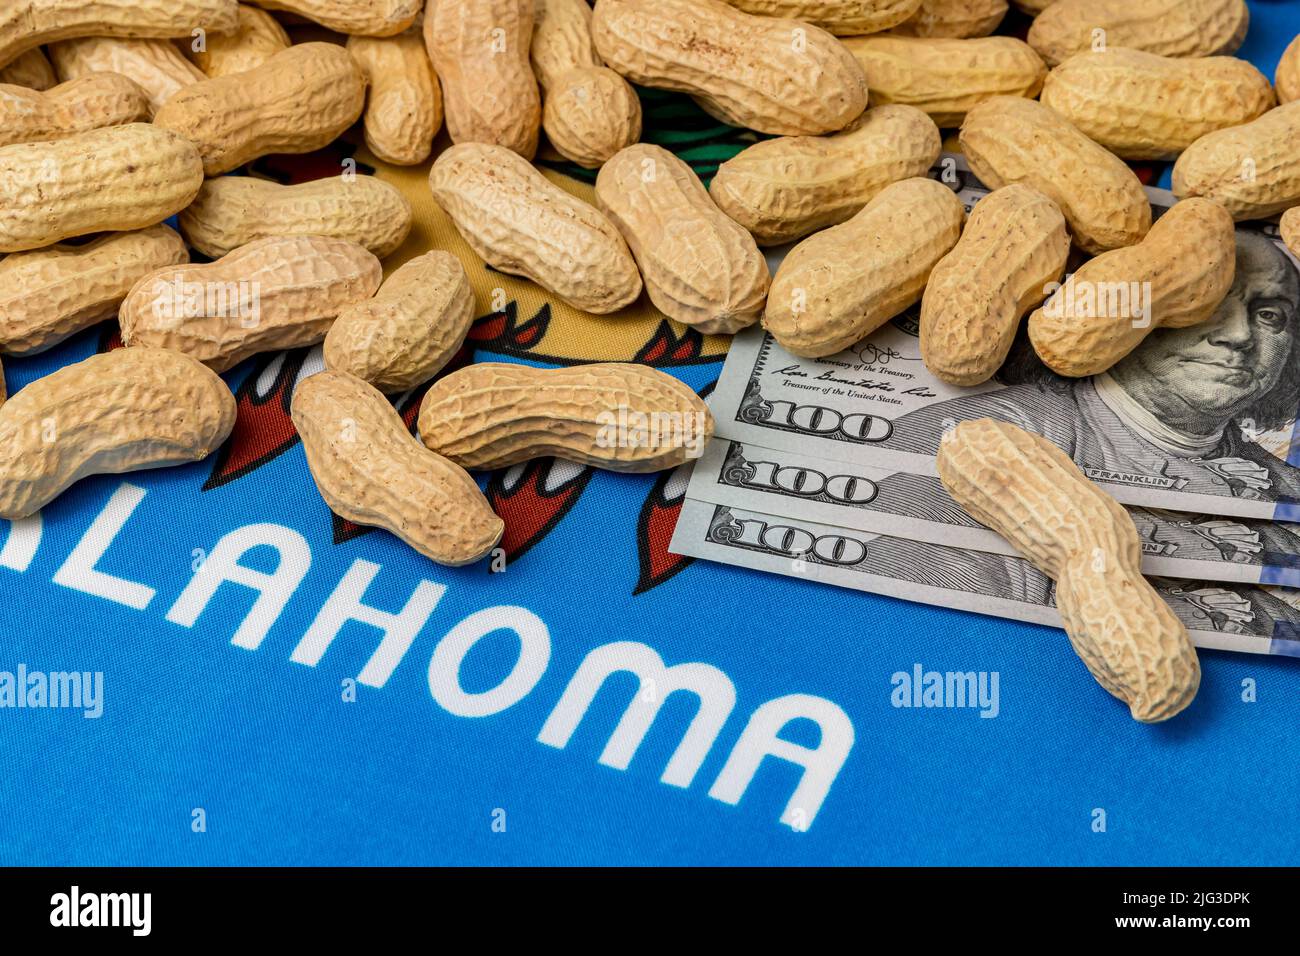 Cacahuetes en concha en la bandera de Oklahoma con billetes de 100 dólares. Concepto de cultivo de cacahuetes, comercio, aranceles y precios de mercado. Foto de stock